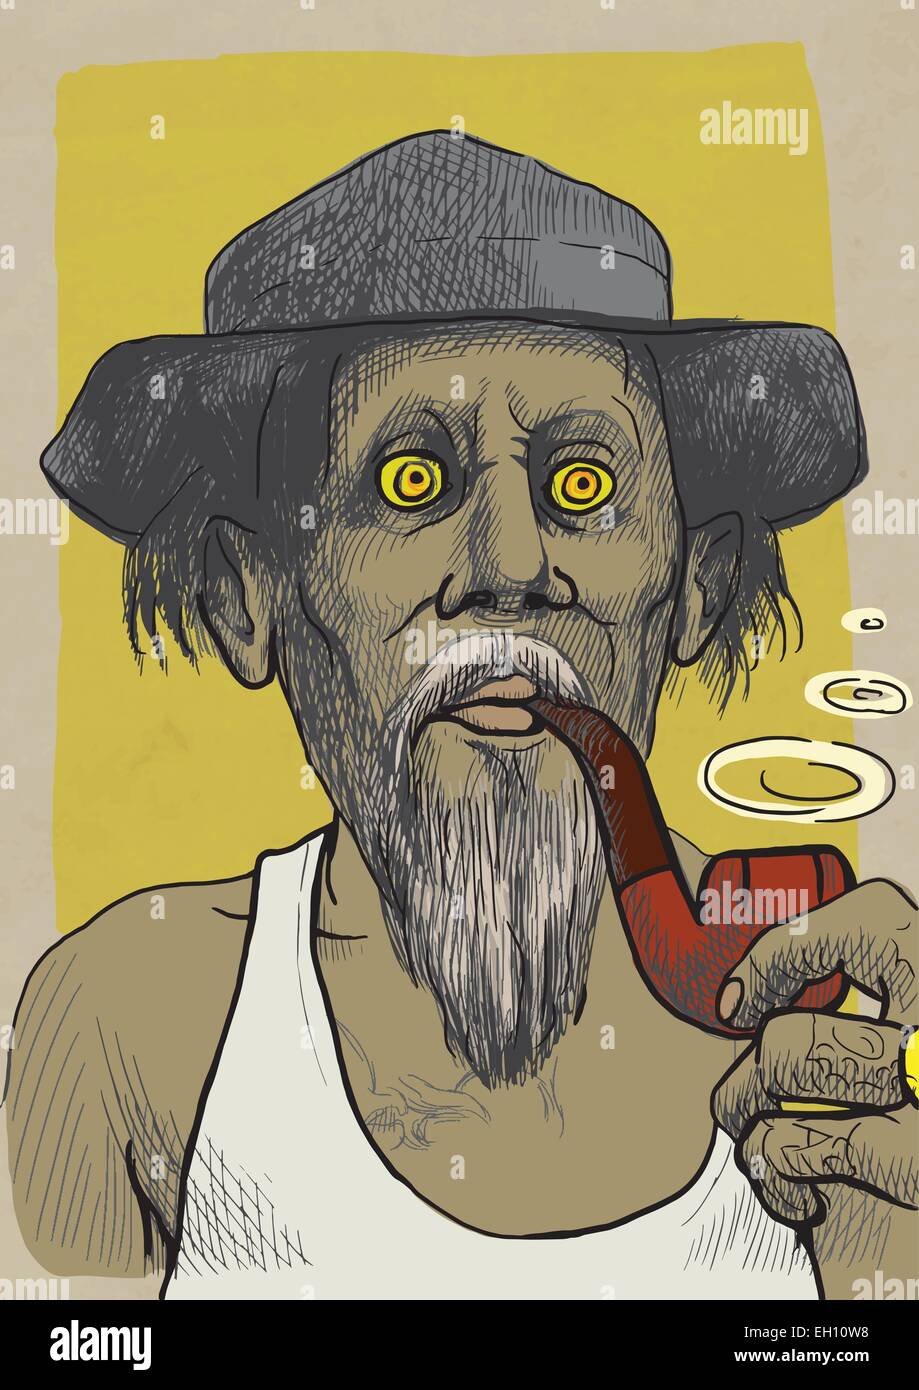 Les fumeurs et fumeurs : Topis. Un hand drawn vector illustration couleur. Homme avec un tuyau Illustration de Vecteur